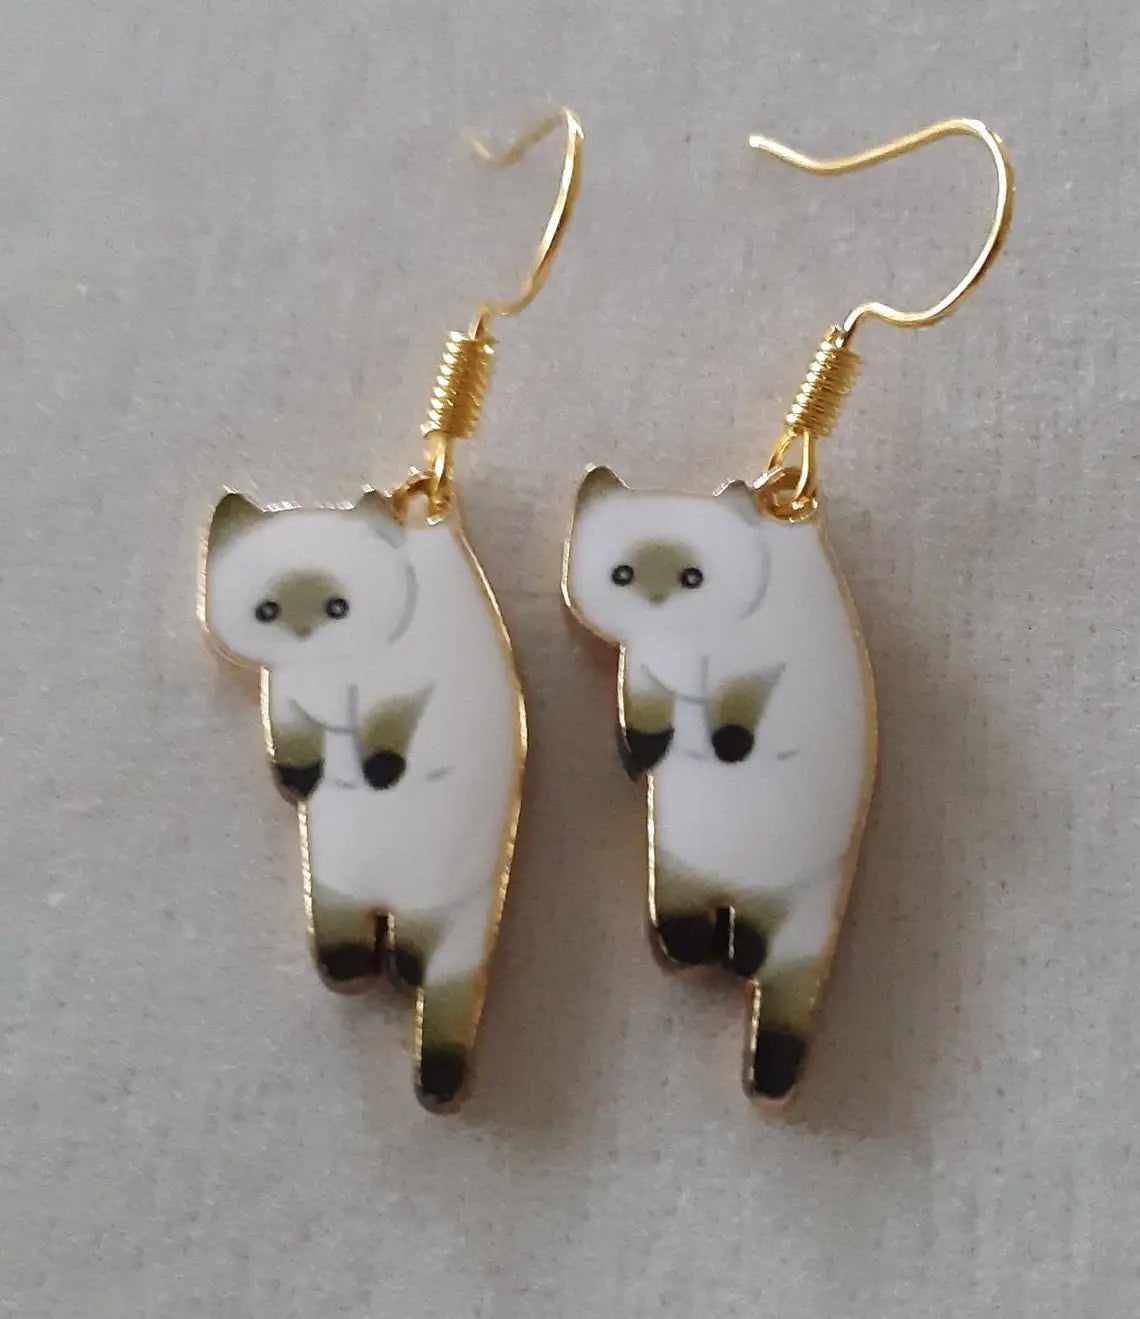 Dangling Cat Earrings Dangle Cat Earrings Kawaii Jewelry Kitsch Earrings Aesthetic Jewelry